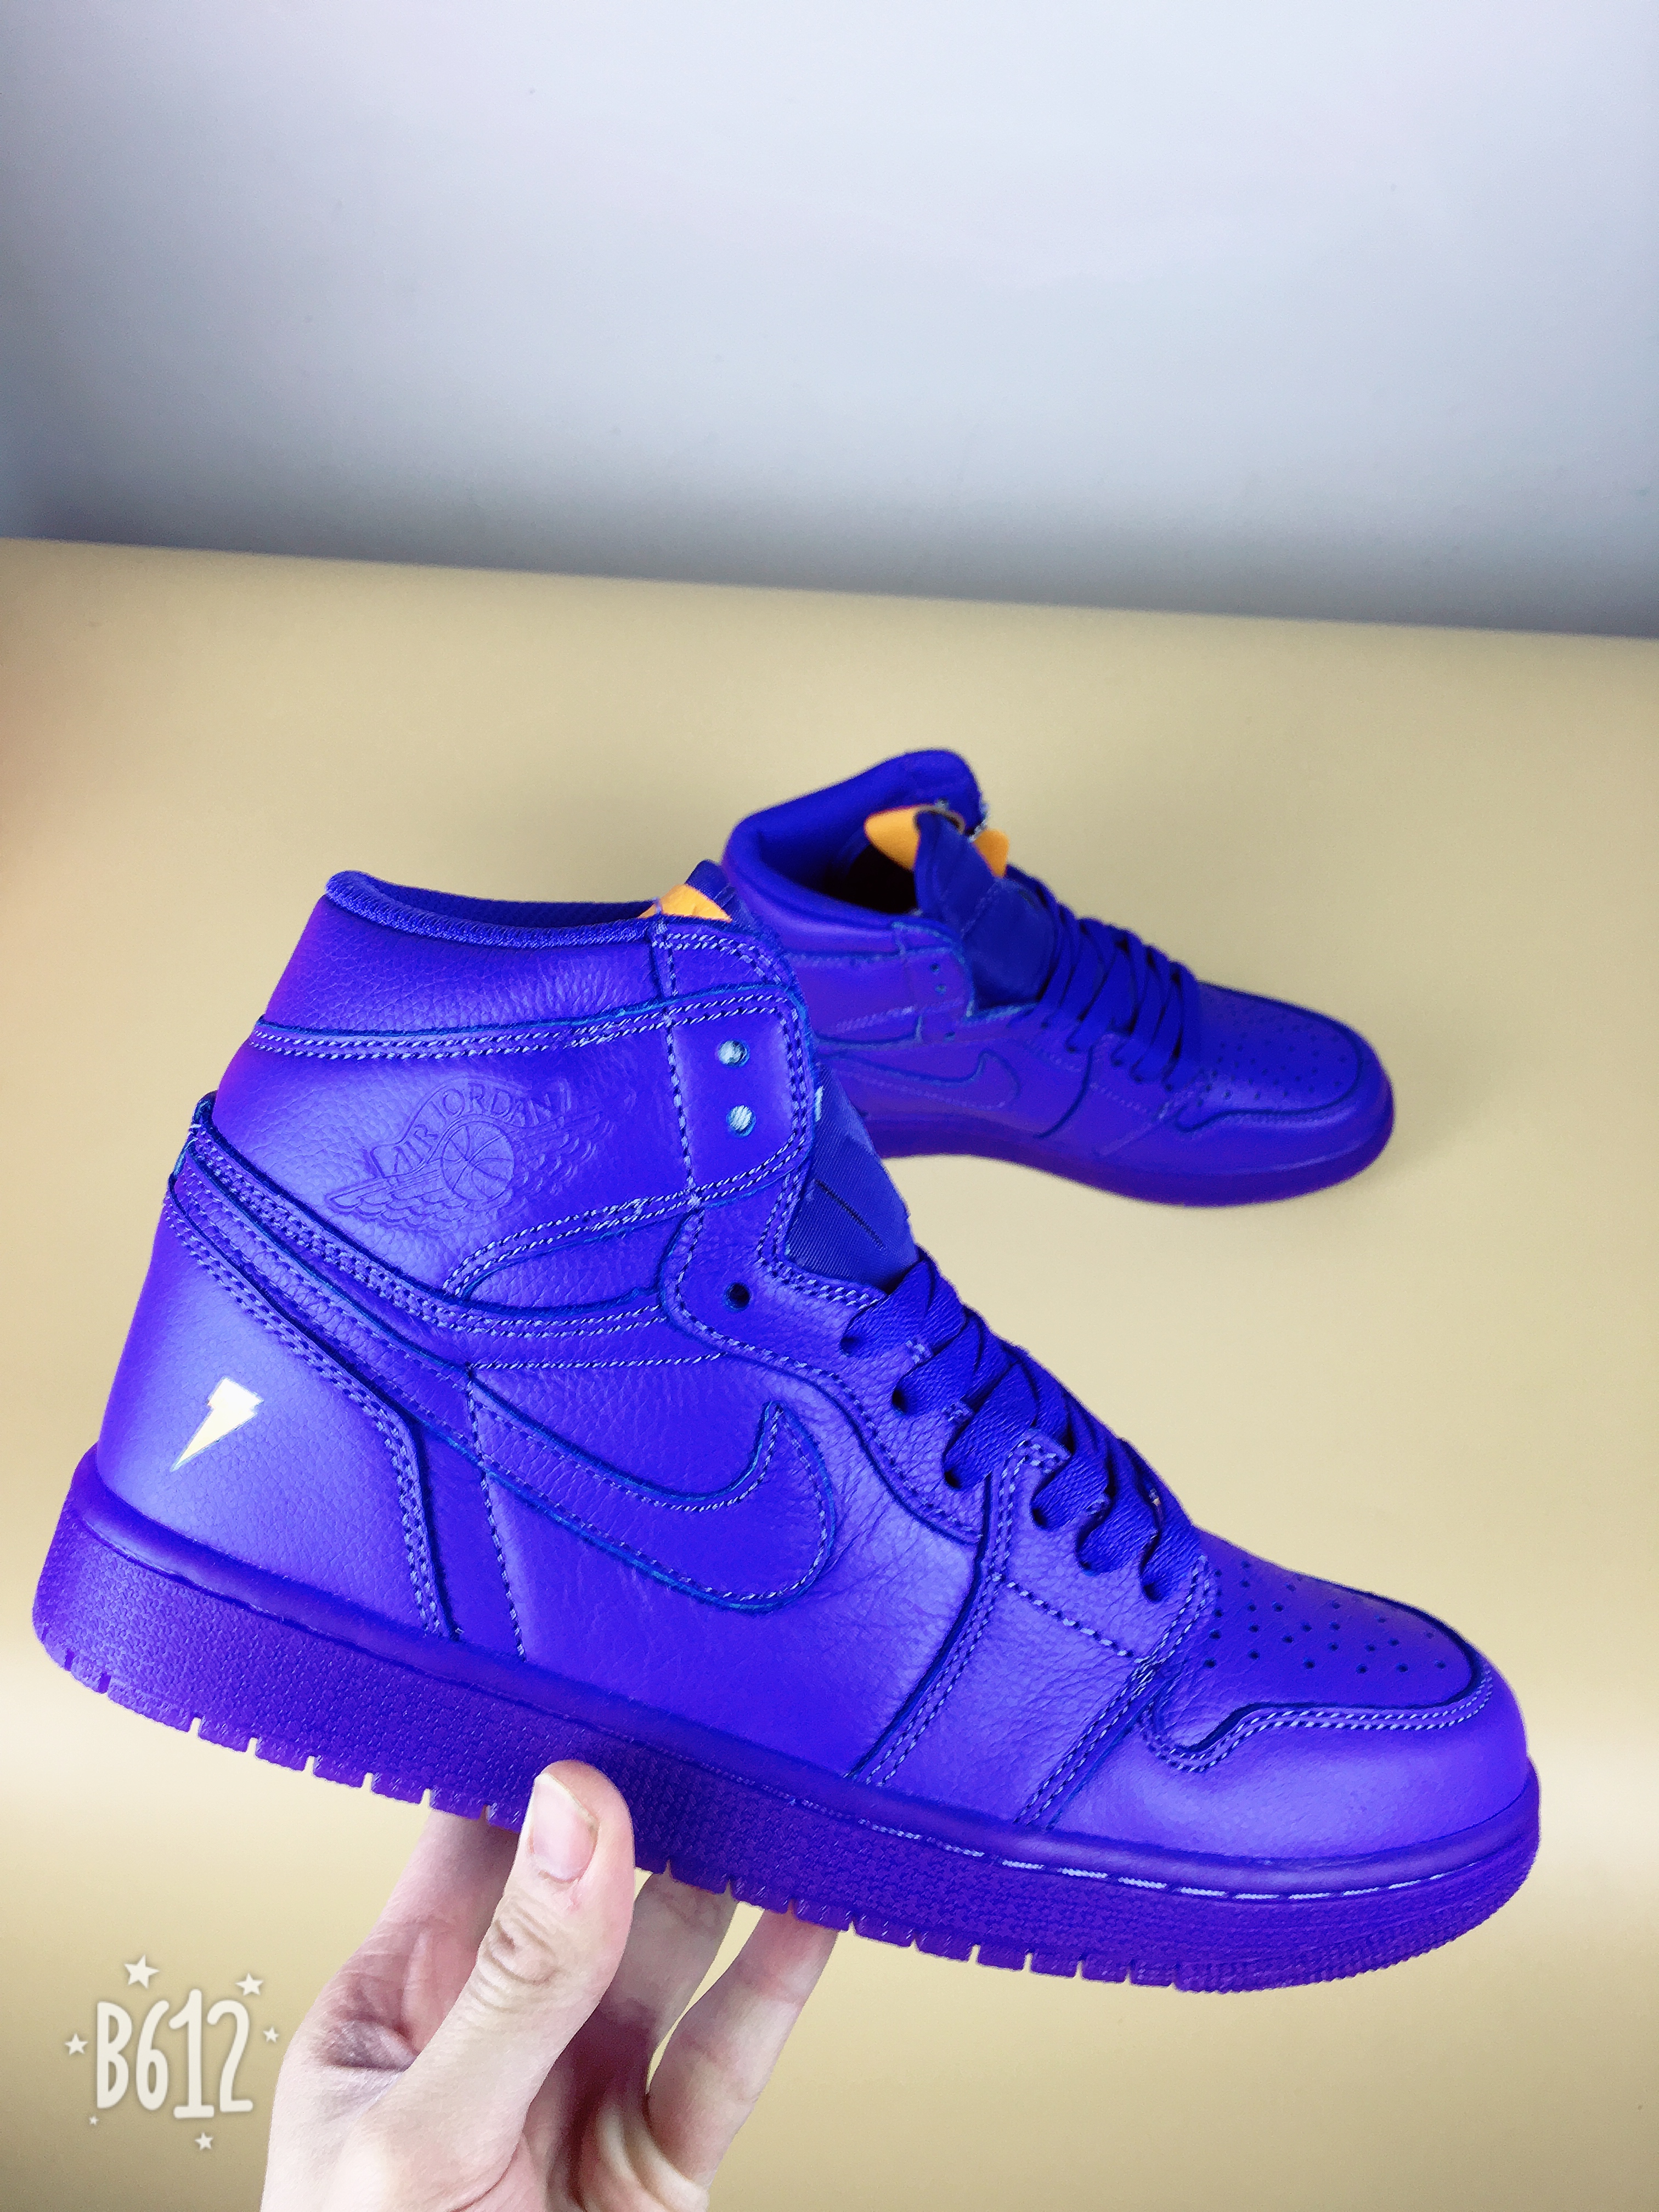 Men Jordan 1 Gatorade “Grape”Blue Shoes - Click Image to Close